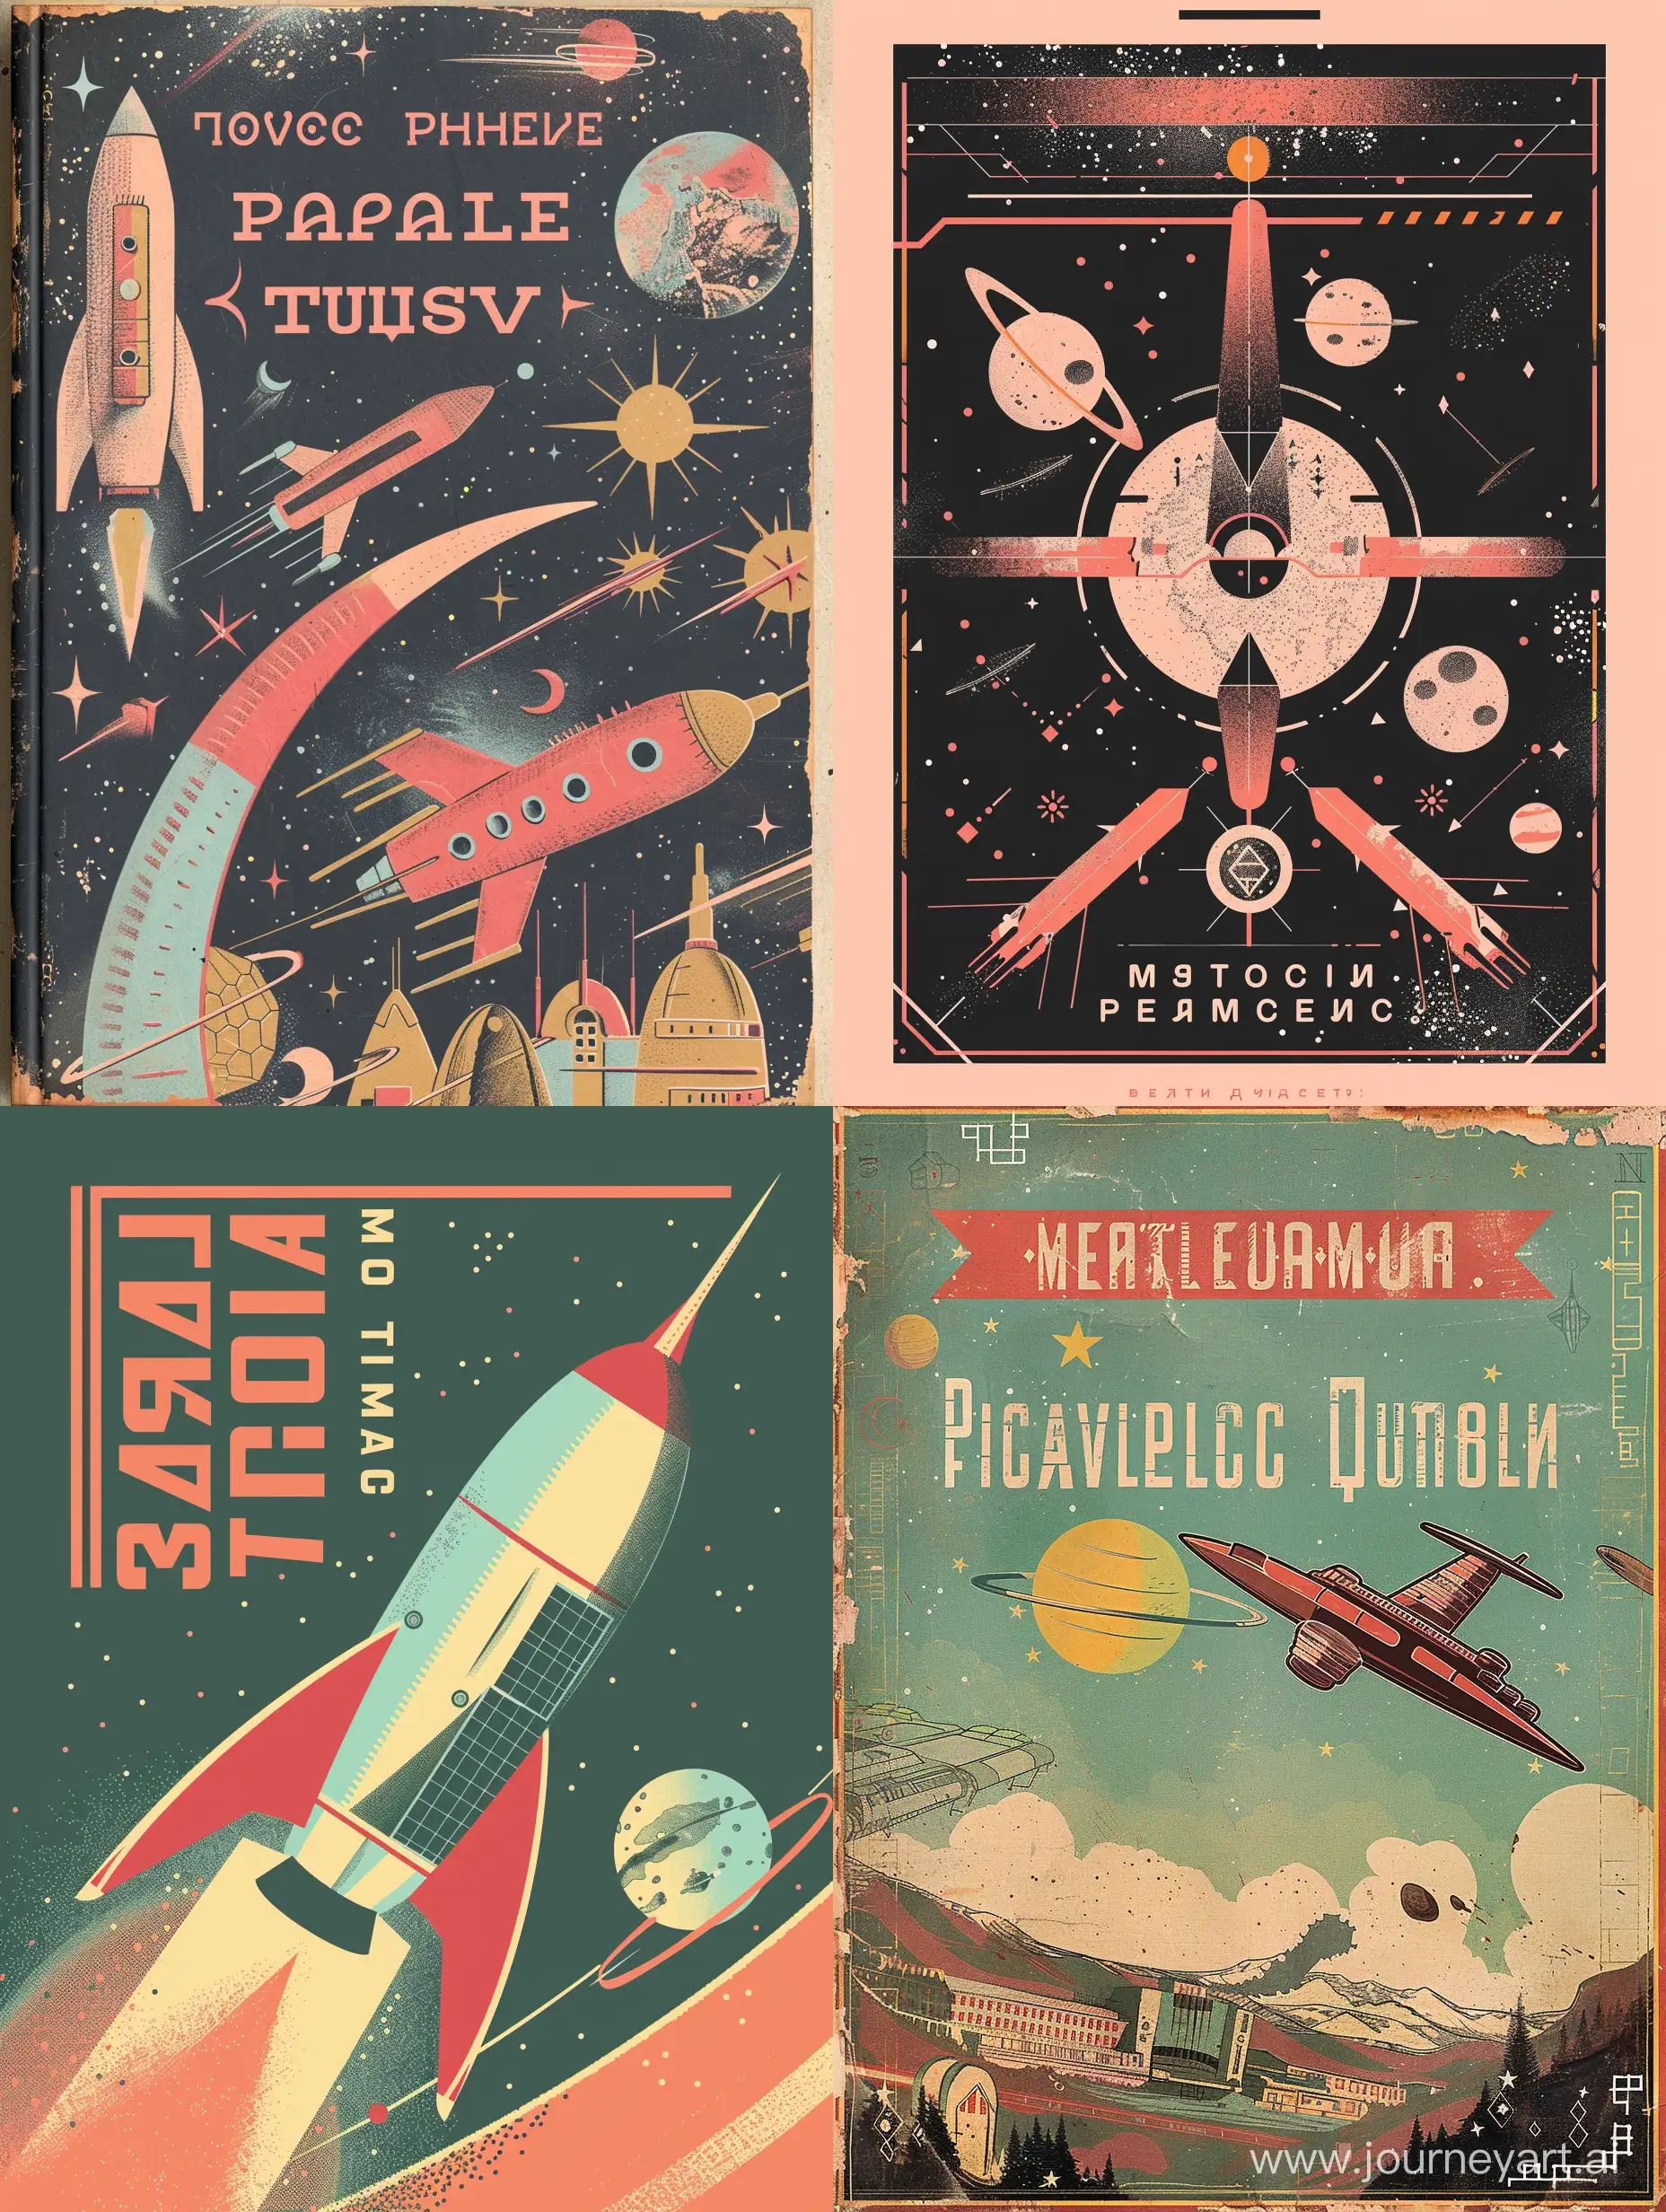 Sovietpunk-Retrofuturism-Intergalactic-Travel-Guidebook-in-Pastel-Colors